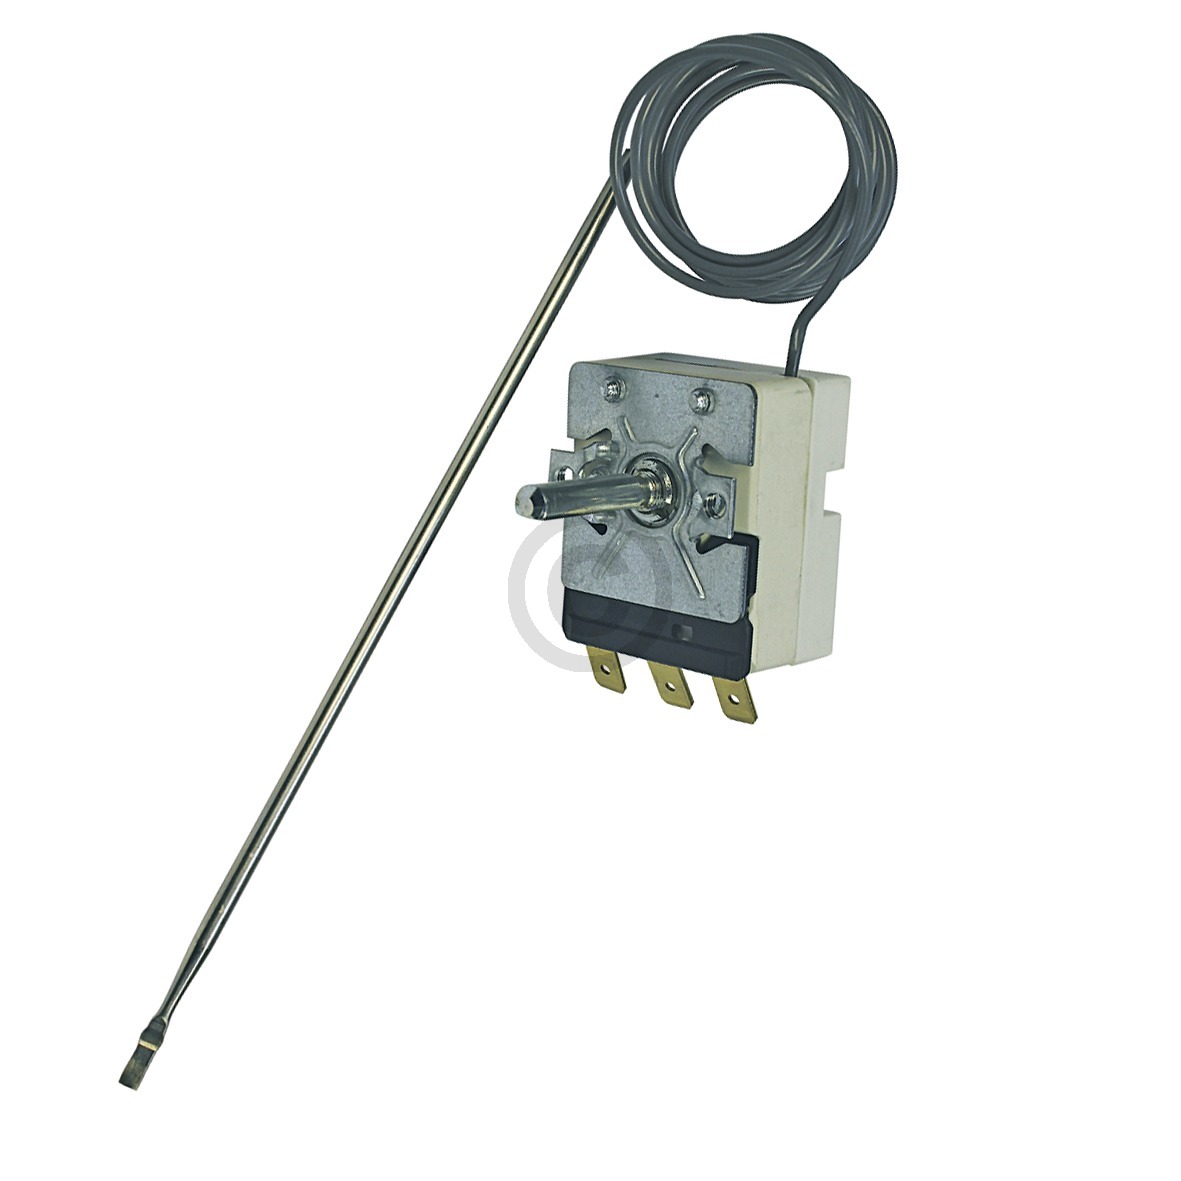 Thermostat 48-300° kompatibel mit EGO 55.13253.010 für Backofen